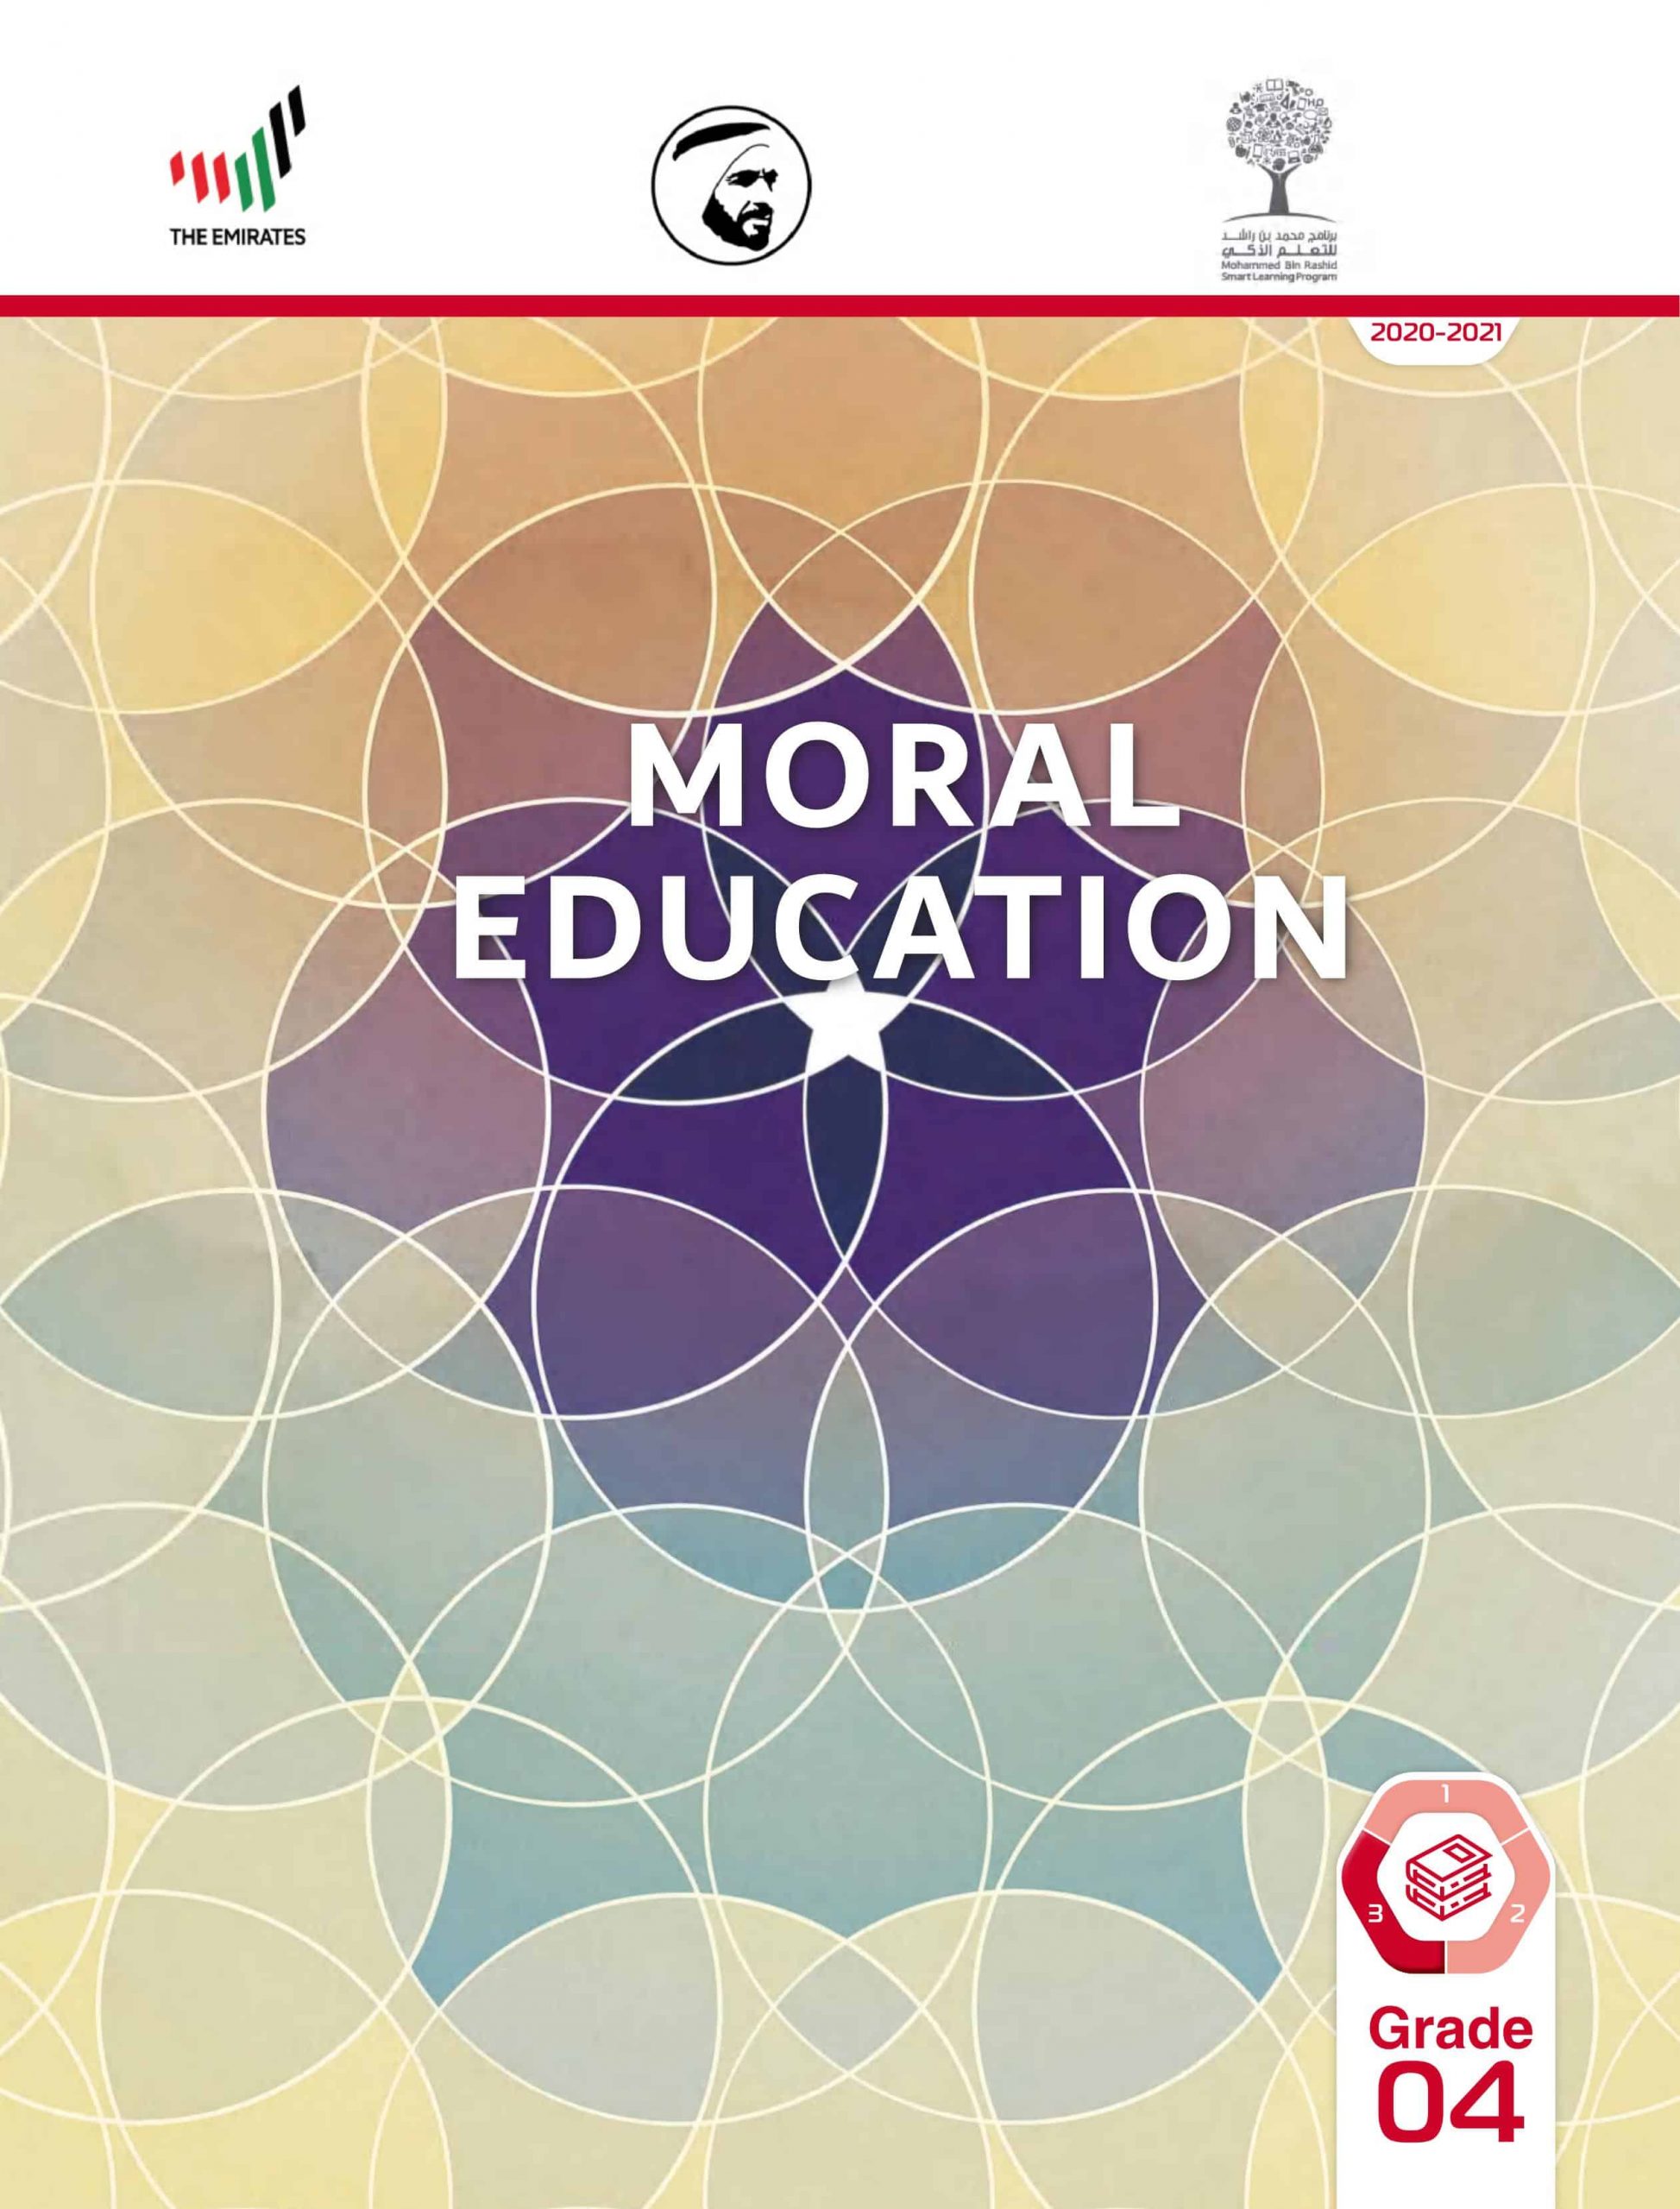 كتاب الطالب بالإنجليزي الفصل الدراسي الثالث 2020-2021 الصف الرابع مادة التربية الأخلاقية